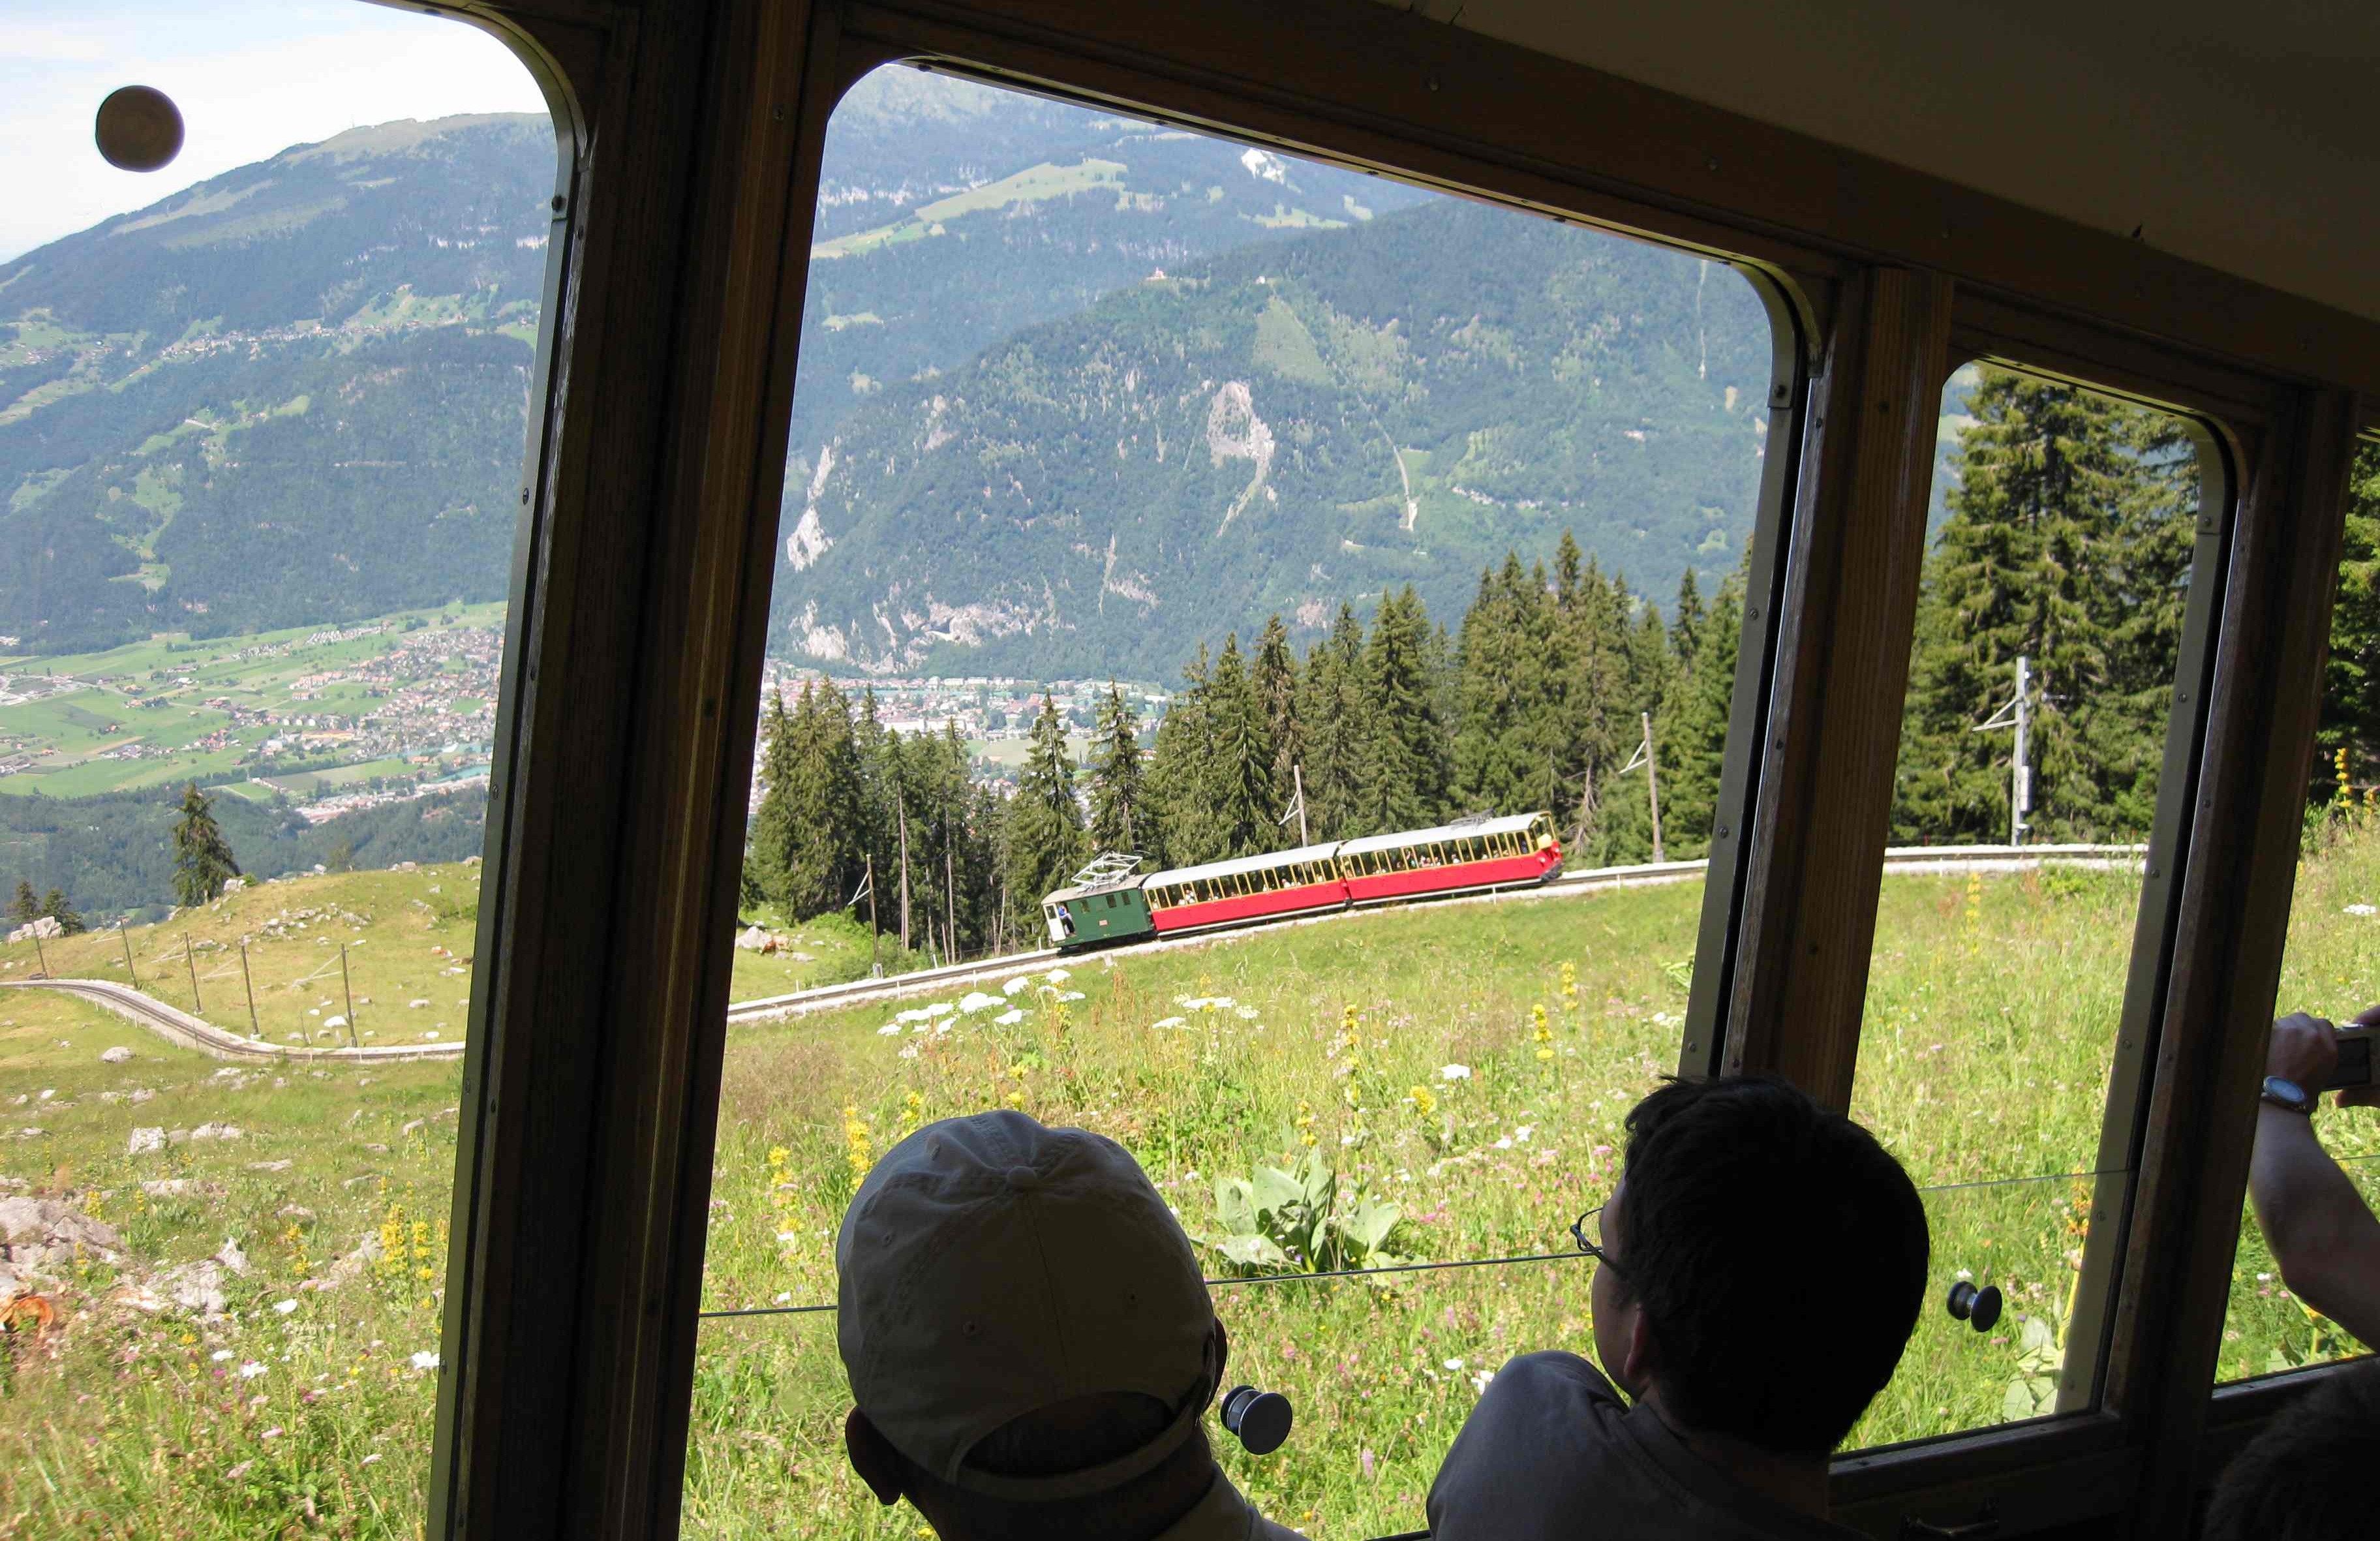 Swiss train bound to Schynige Platte near Interlaken